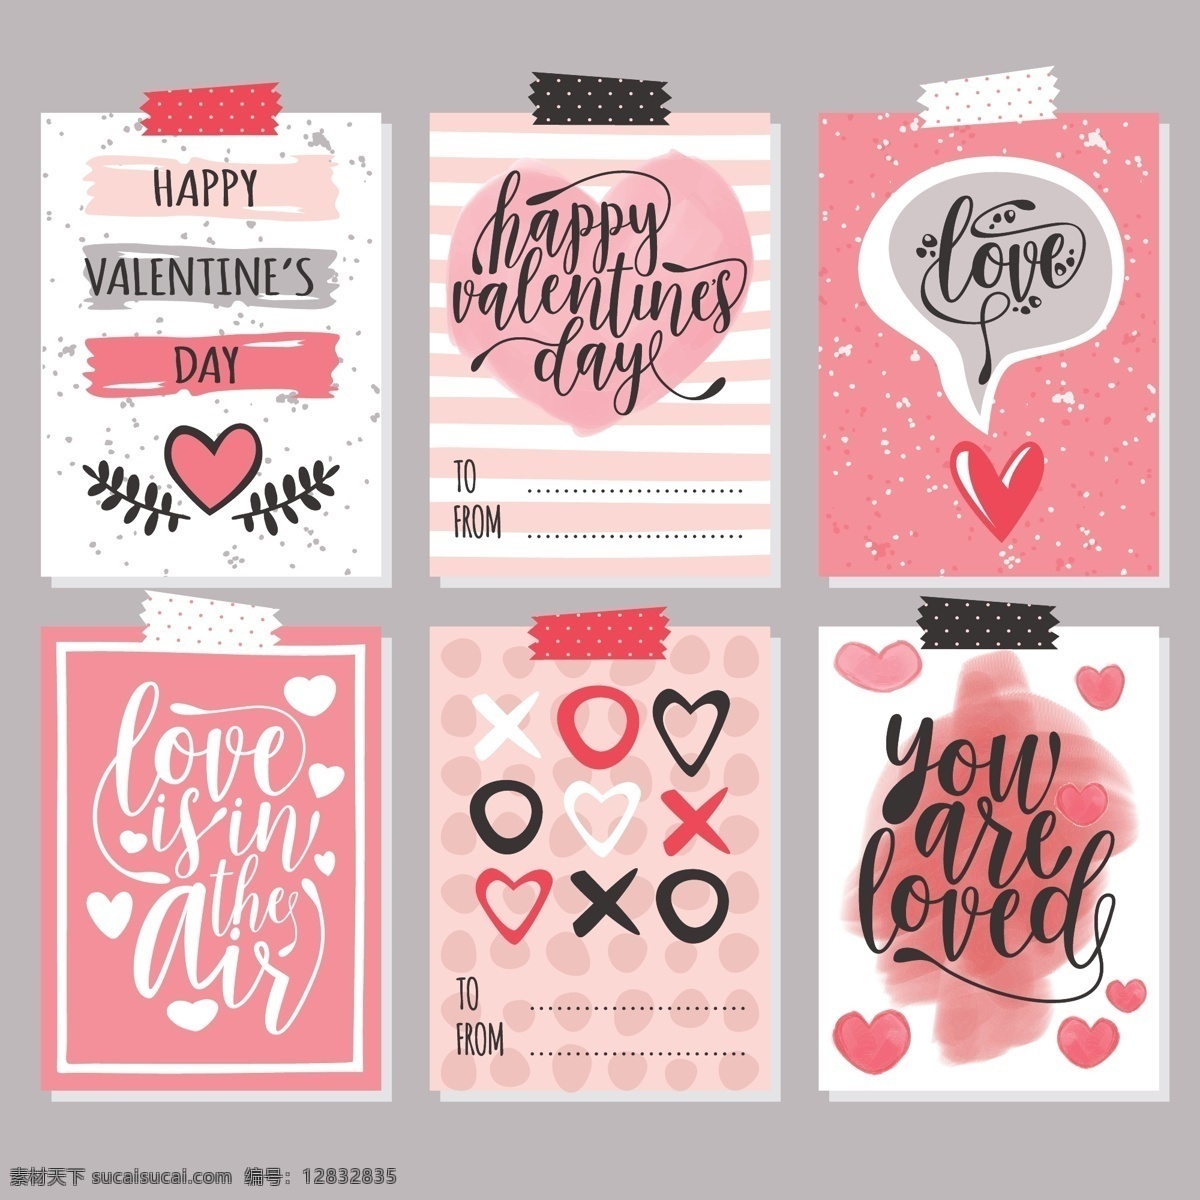 粉色 节日元素 卡片设计 情侣 情人 情人节 情人节卡片 矢量素材 手绘 手绘插画 手绘涂鸦 卡片